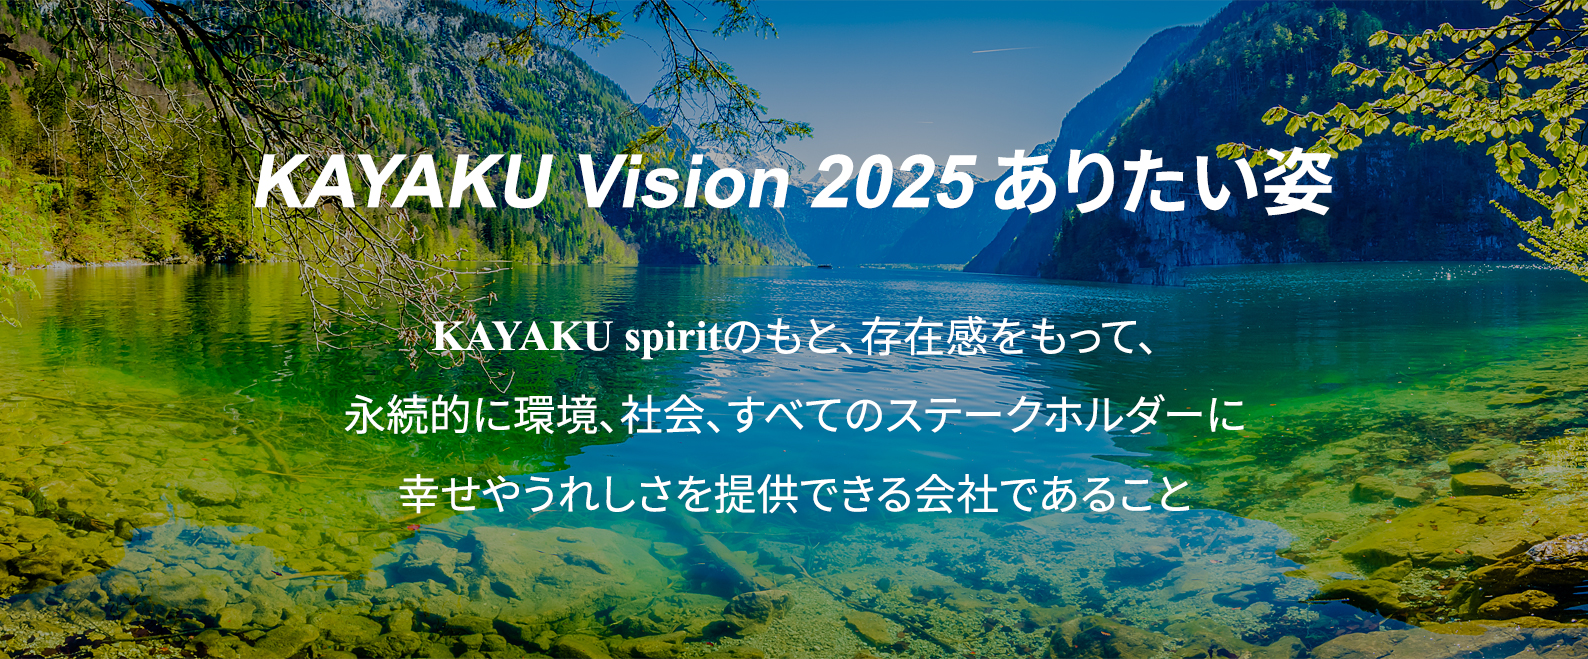 KAYAKU Vision 2025 ありたい姿